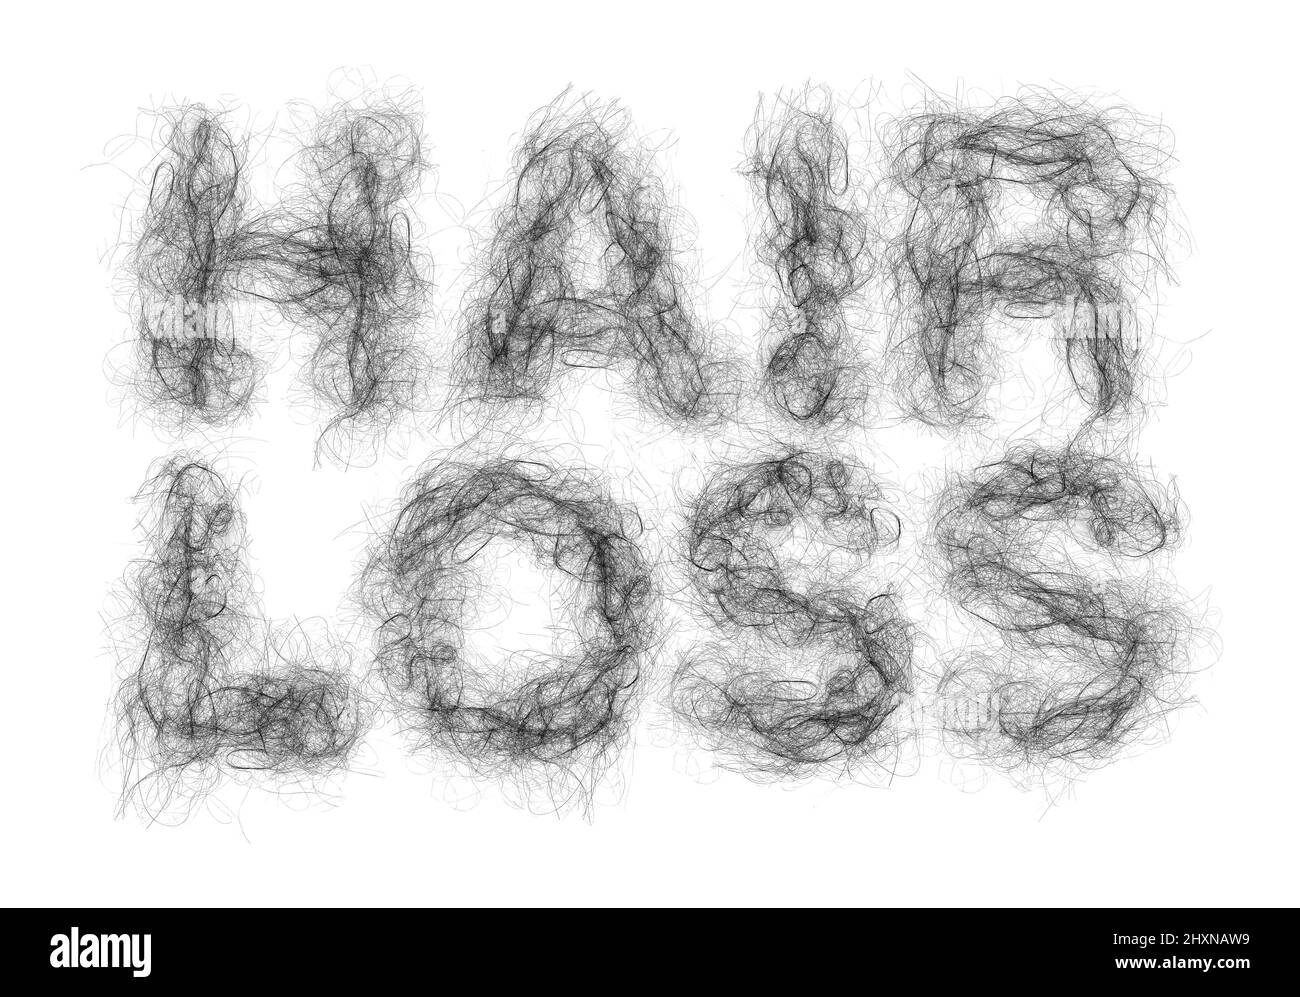 Perdita di capelli o alopecia e balding concetto medico come grumi di follicoli a forma di testo che rappresenta un'acconciatura recedente con follicoli diradamento. Foto Stock